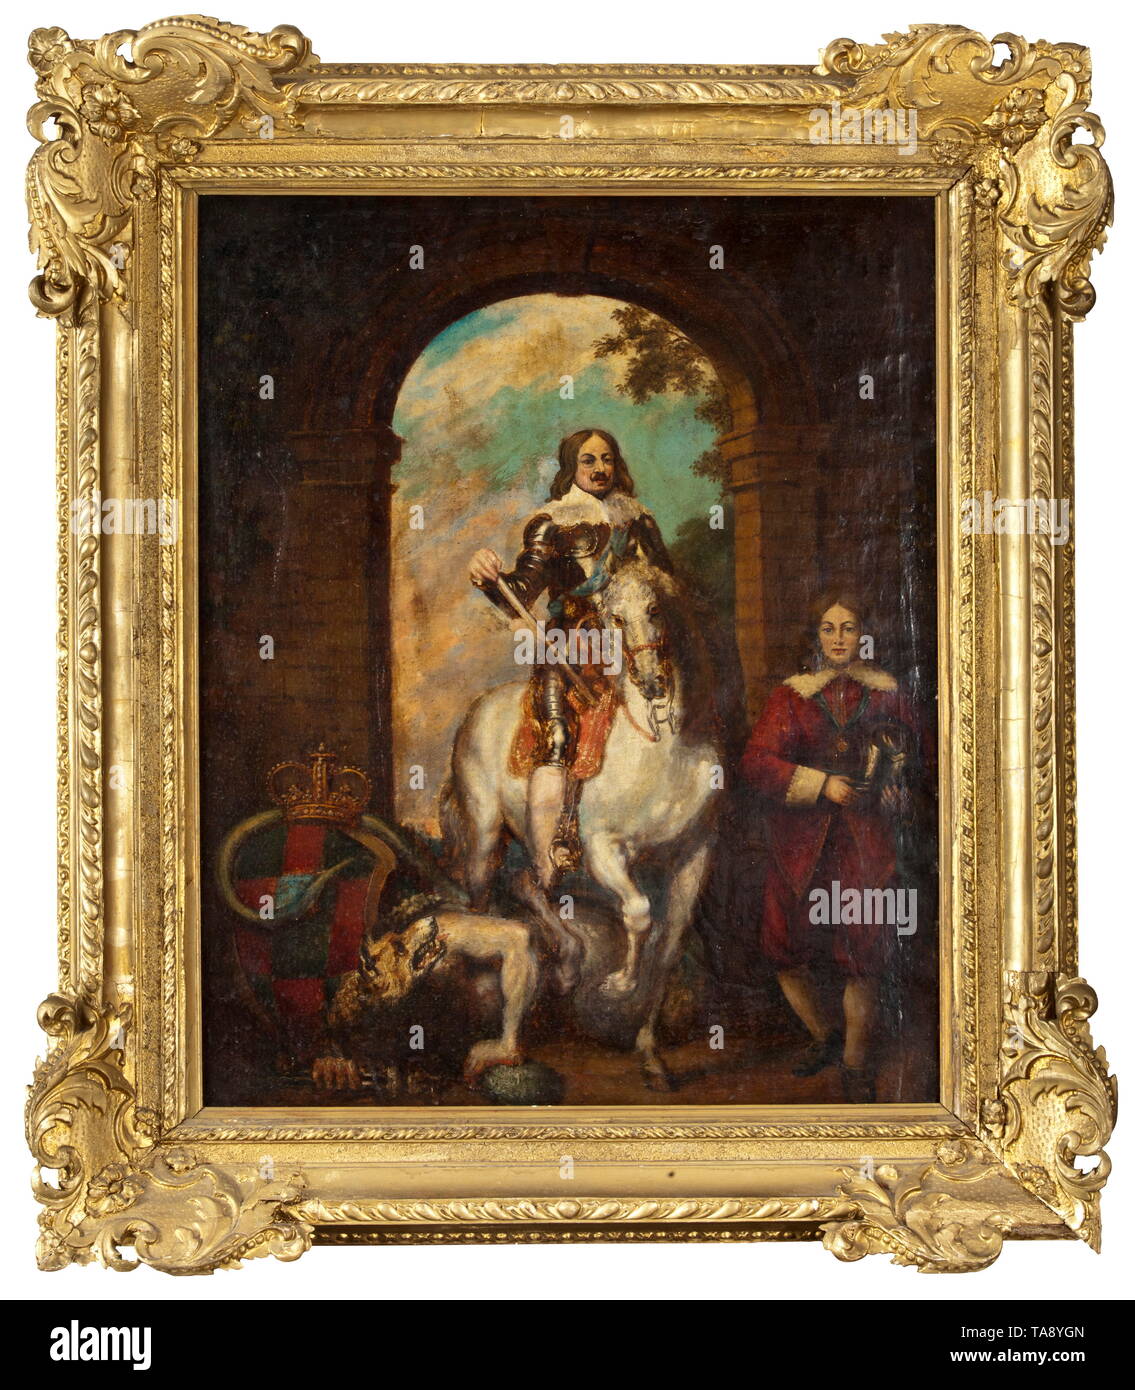 Un portrait de Baroque un homme à cheval, 19e siècle, dans le style du 17e siècle Huile sur toile. Armor-clad cavalier dans la pose d'un général, monté sur un cheval blanc sous une arcade. Un loup-garou se recroquevillant sur le terrain, un serviteur debout à droite, tenant le casque du pilote. Au verso un blason au-dessous d'une couronne du prince. Dans un cadre en plâtre doré (endommagé). Taille de la toile 76 x 60 cm, taille du cadre 97 x 84 cm., historique historique, beaux-arts, l'art, 19e siècle, l'artiste n'a pas d'auteur pour être effacé Banque D'Images